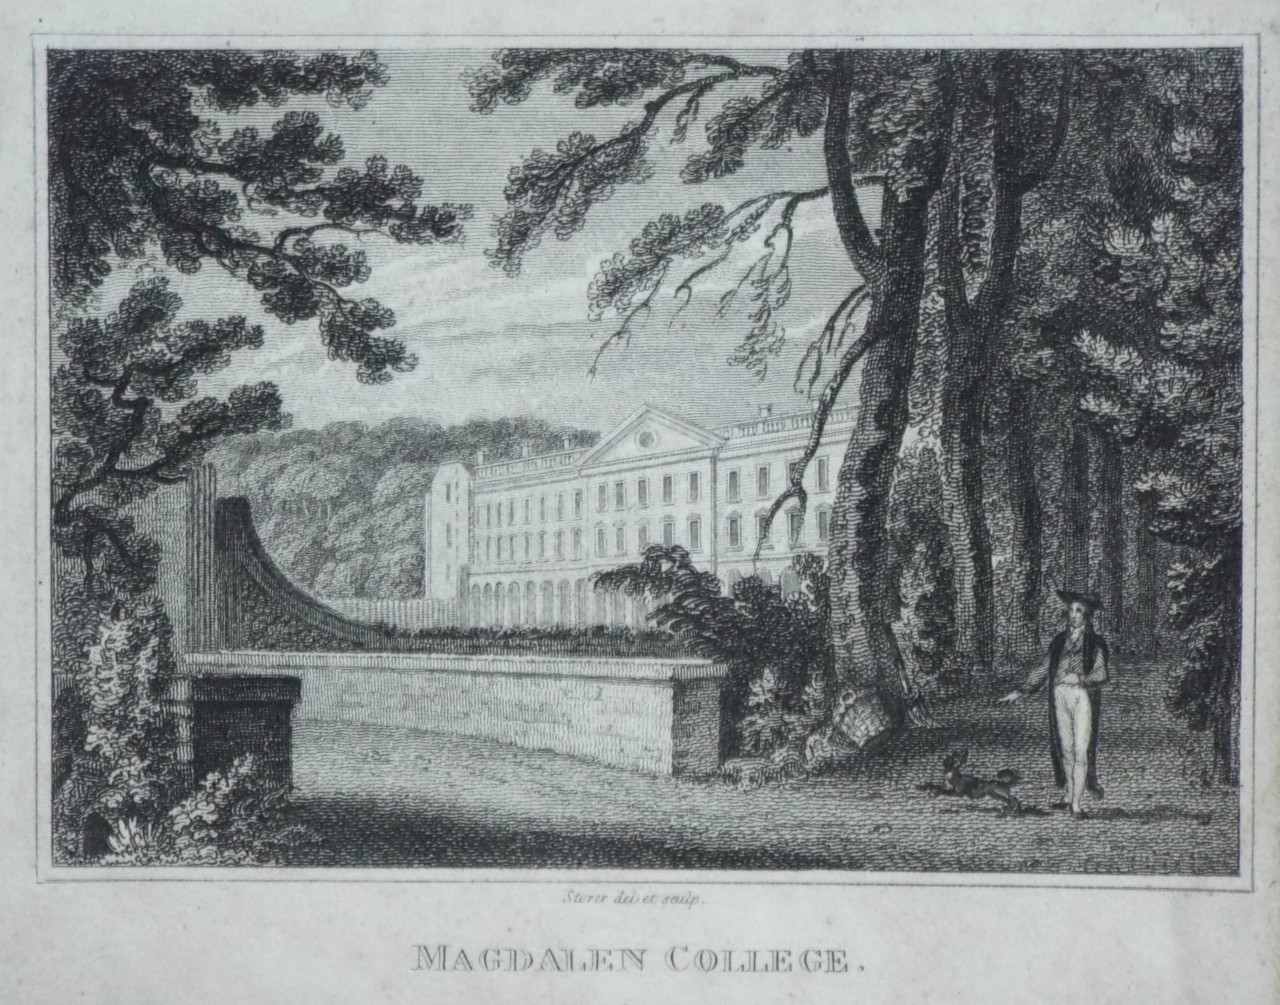 Print - Magdalen College. - Storer